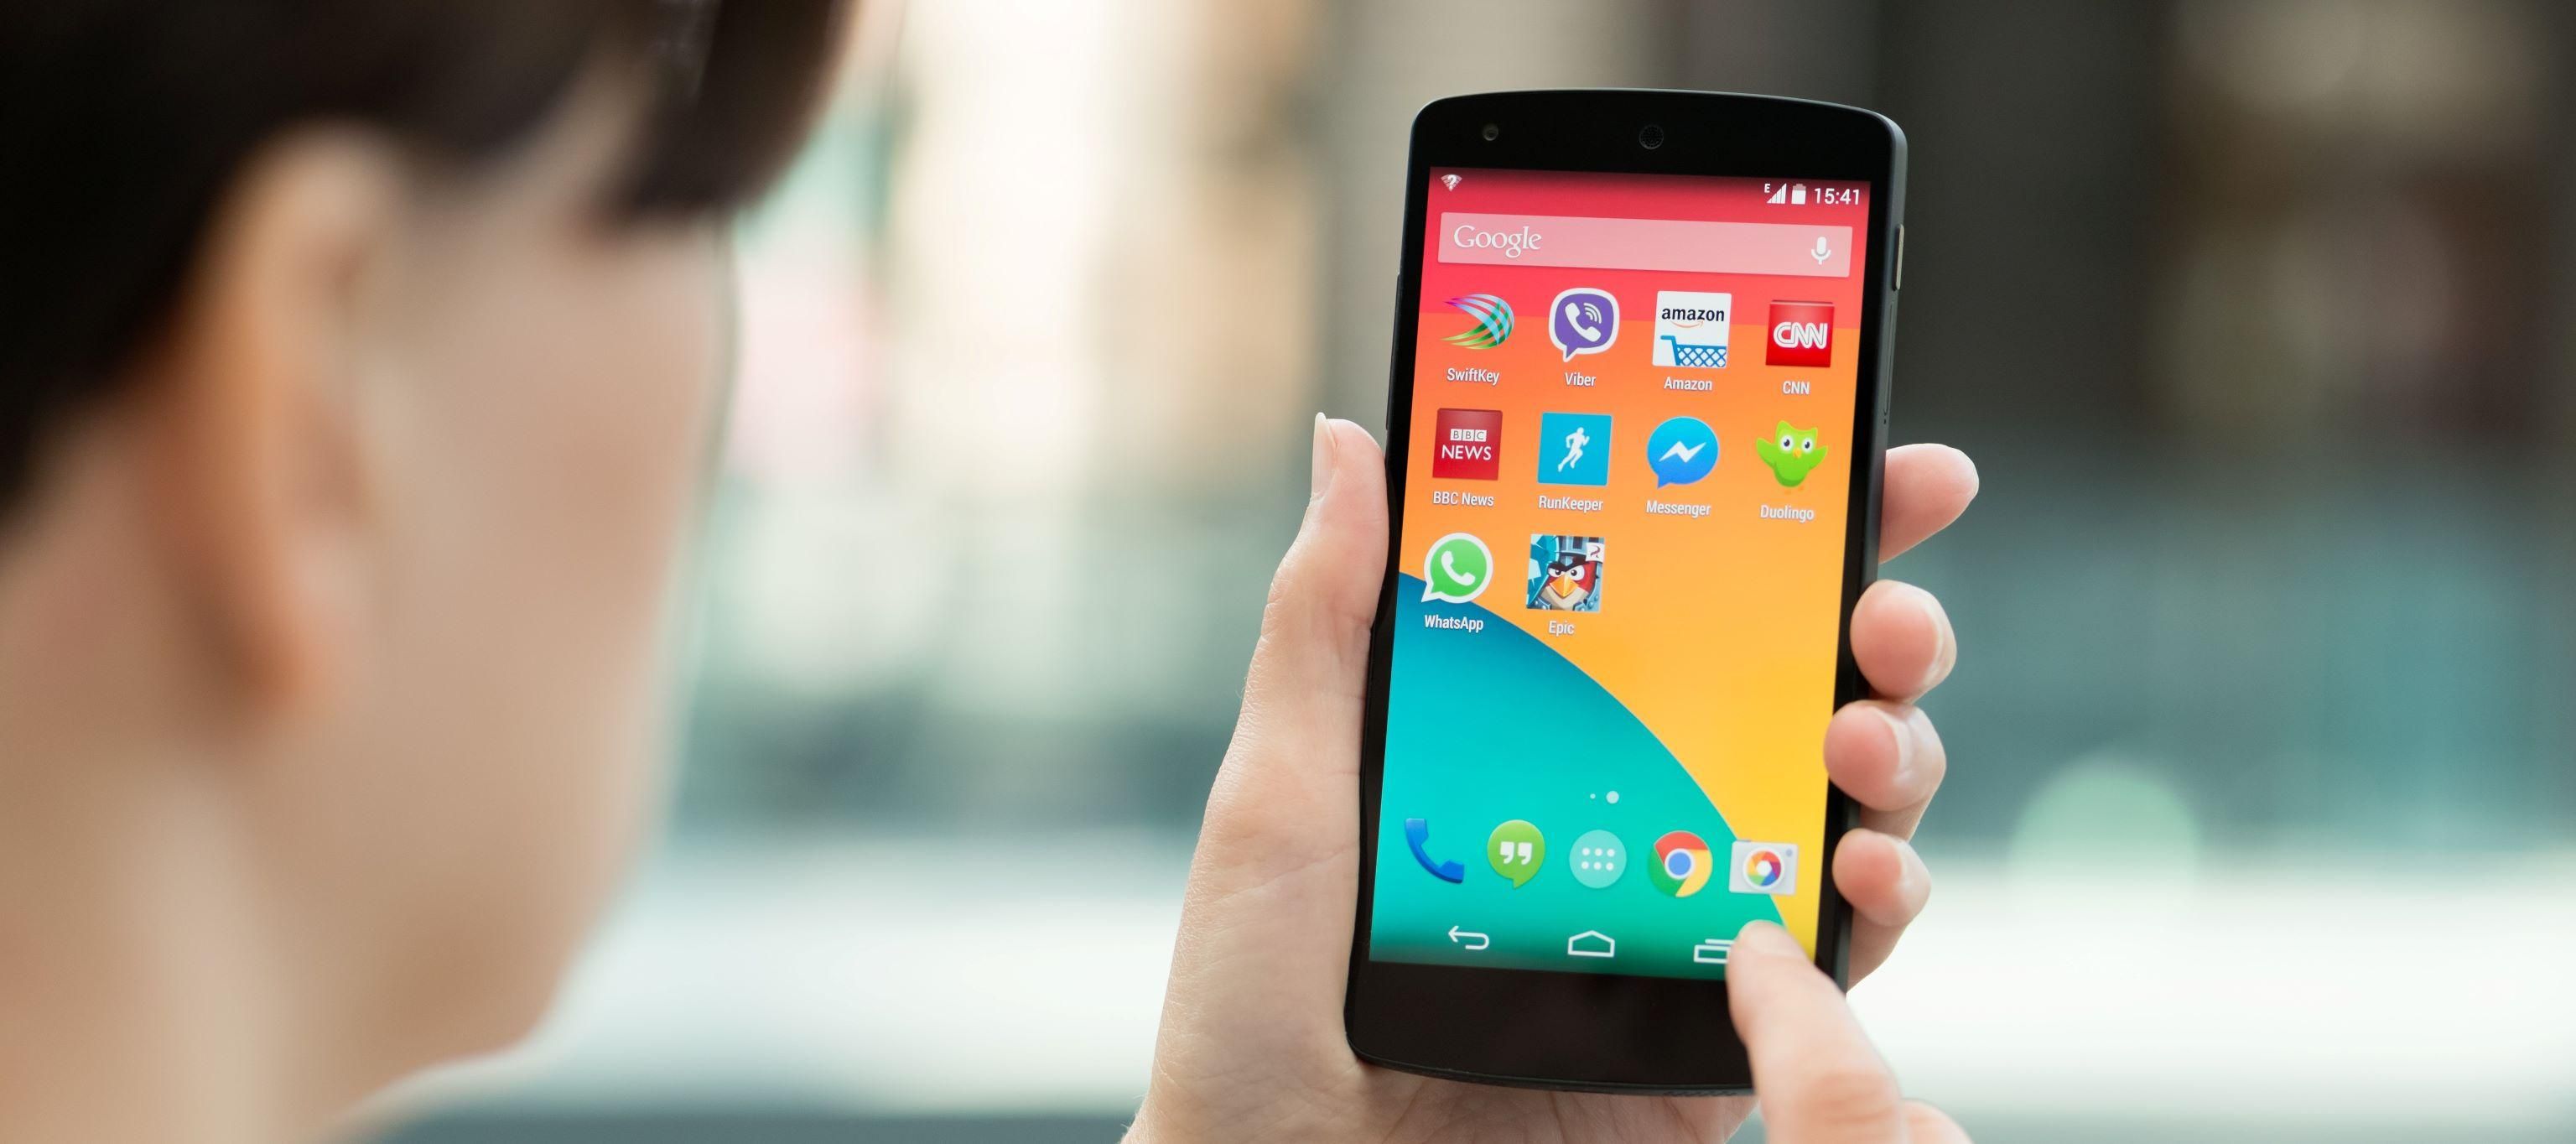 Adatvédelmi változások kavarhatnak be az androidos telefonokon